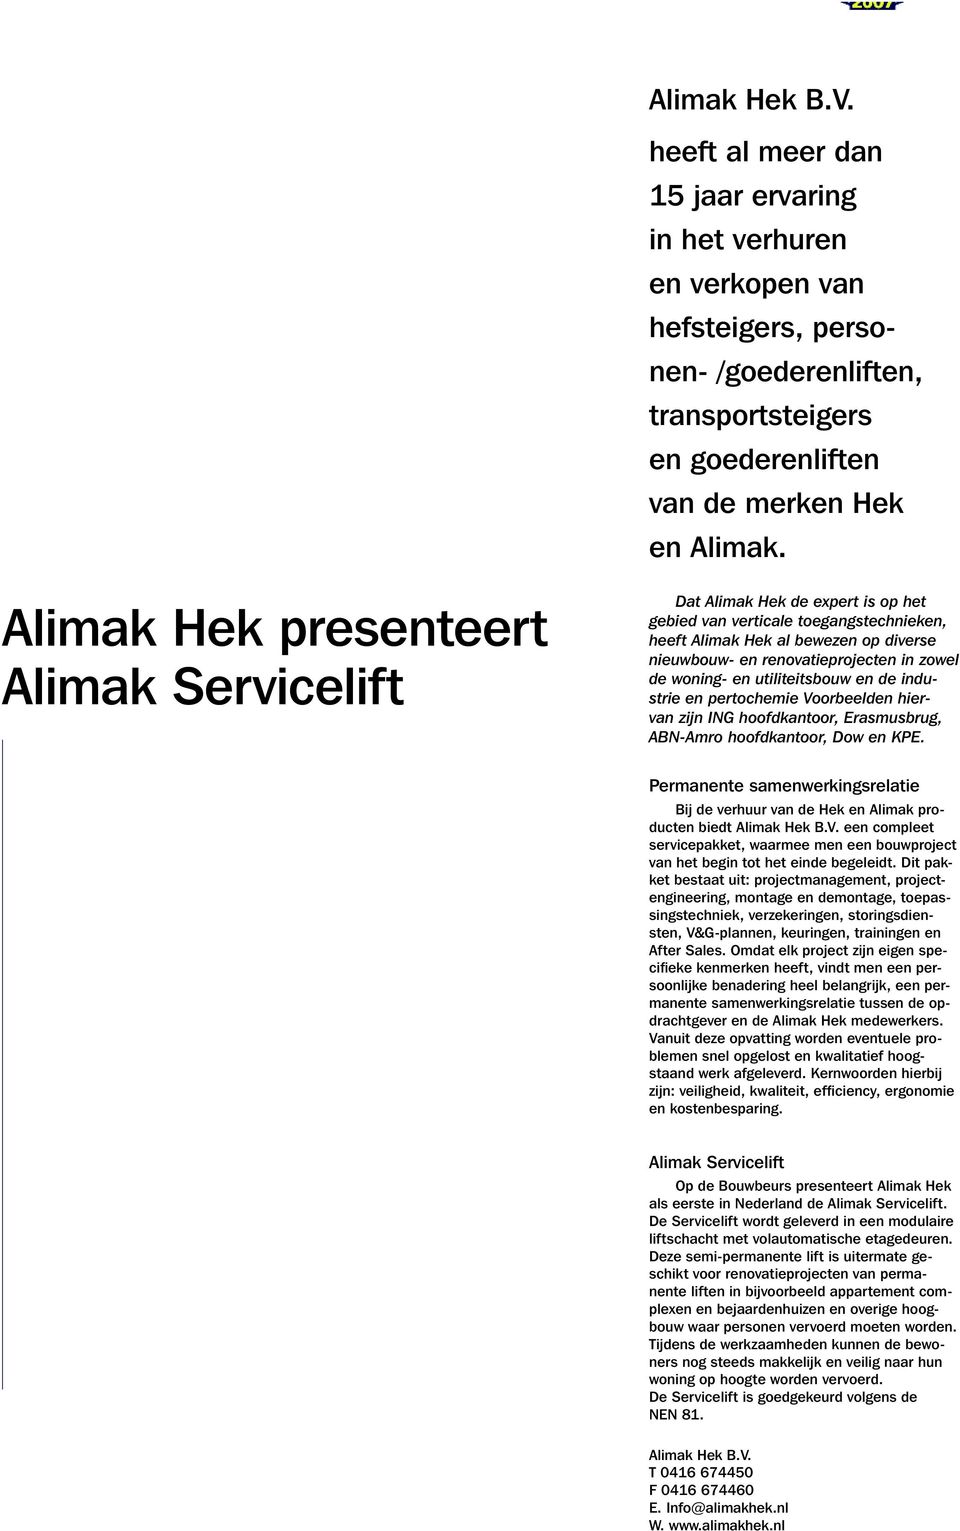 Alimak Hek presenteert Alimak Servicelift Dat Alimak Hek de expert is op het gebied van verticale toegangstechnieken, heeft Alimak Hek al bewezen op diverse nieuwbouw- en renovatieprojecten in zowel